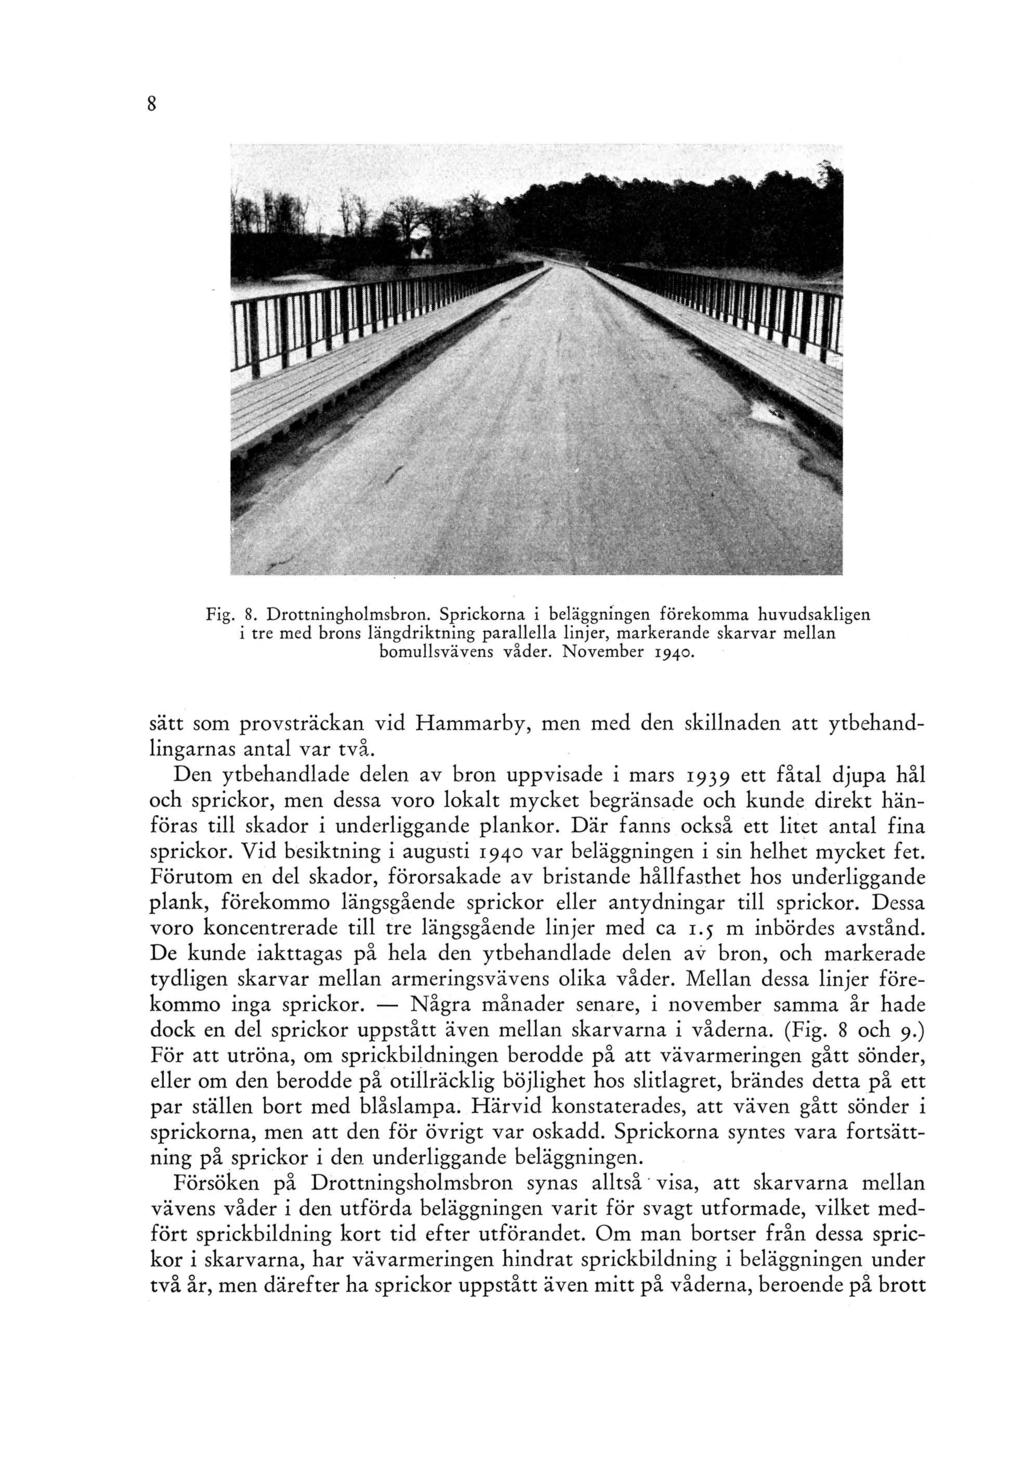 Fig. 8. Drottningholmsbron. Sprickorna i beläggningen förekomma huvudsakligen i tre med brons längdriktning parallella linjer, markerande skarvar mellan bomullsvävens våder. November 1940.